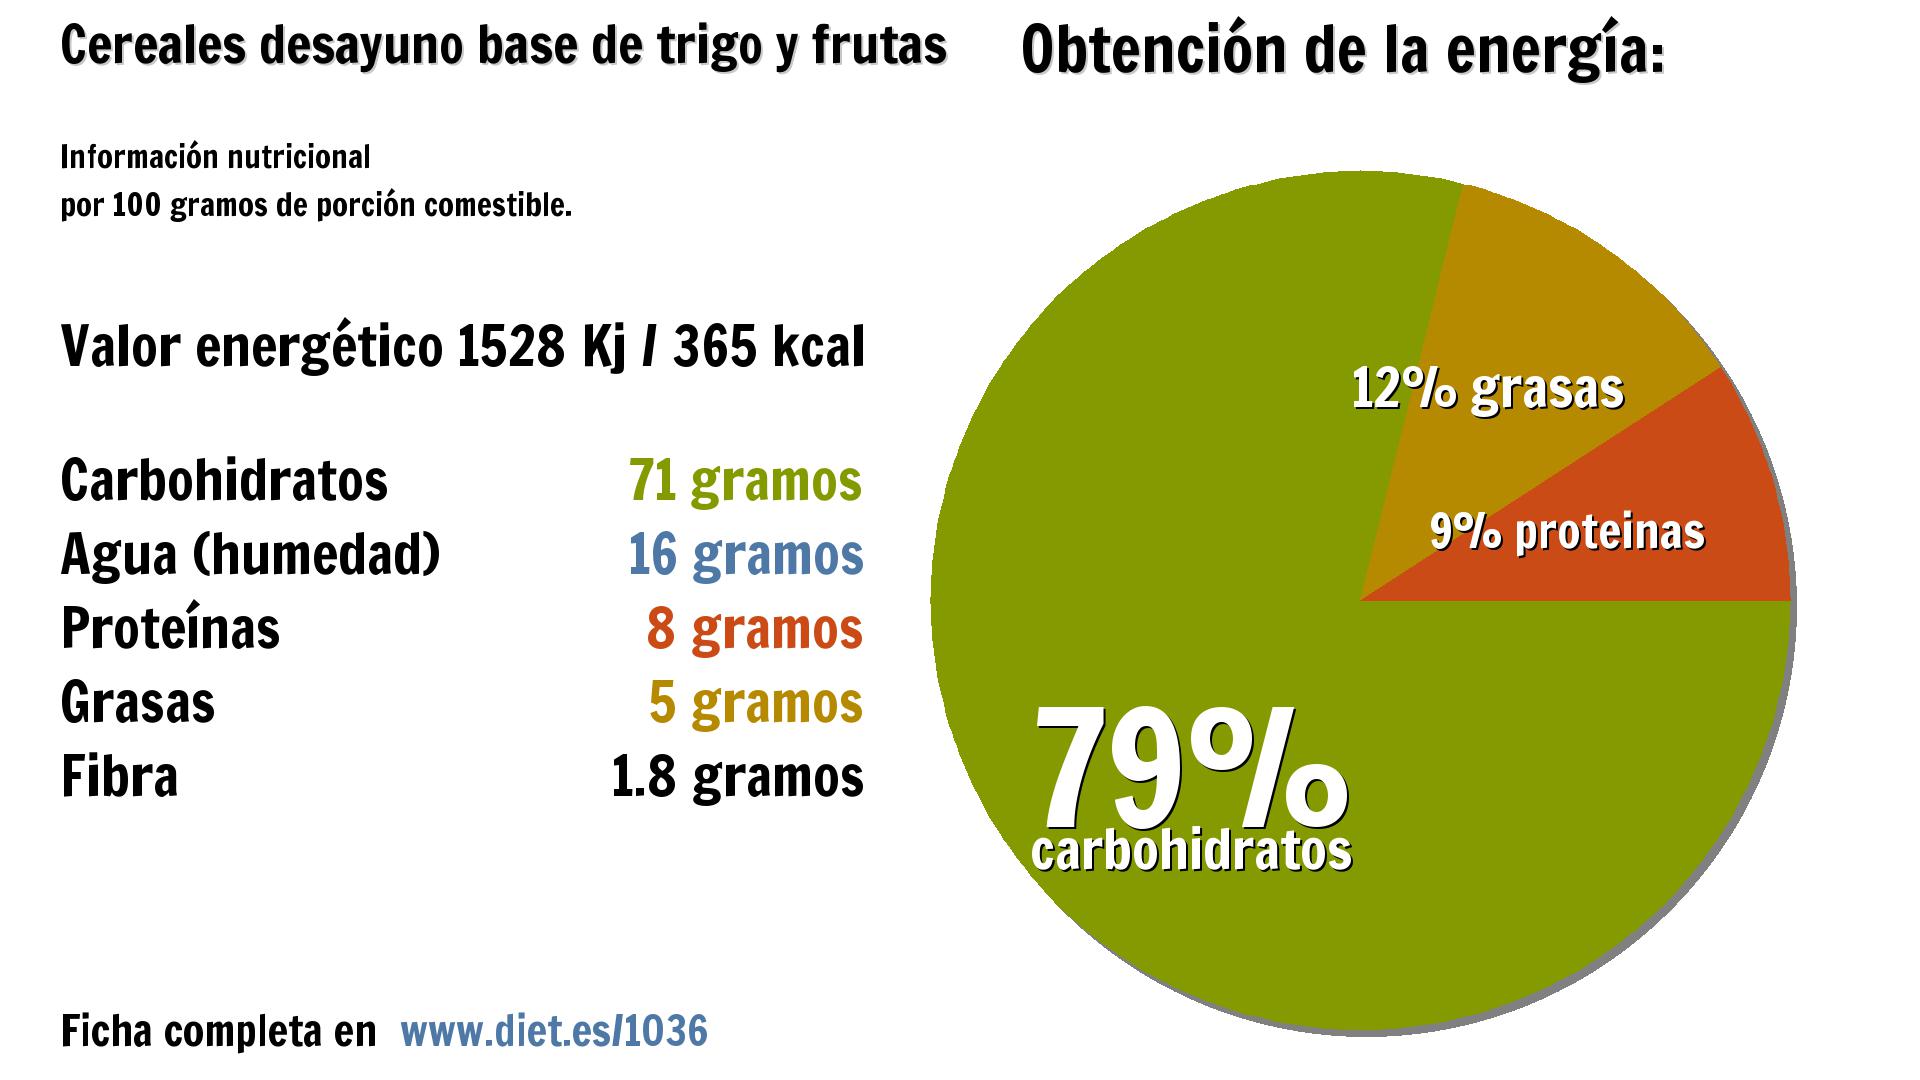 Cereales desayuno base de trigo y frutas: energía 1528 Kj, carbohidratos 71 g., agua 16 g., proteínas 8 g., grasas 5 g. y fibra 2 g.